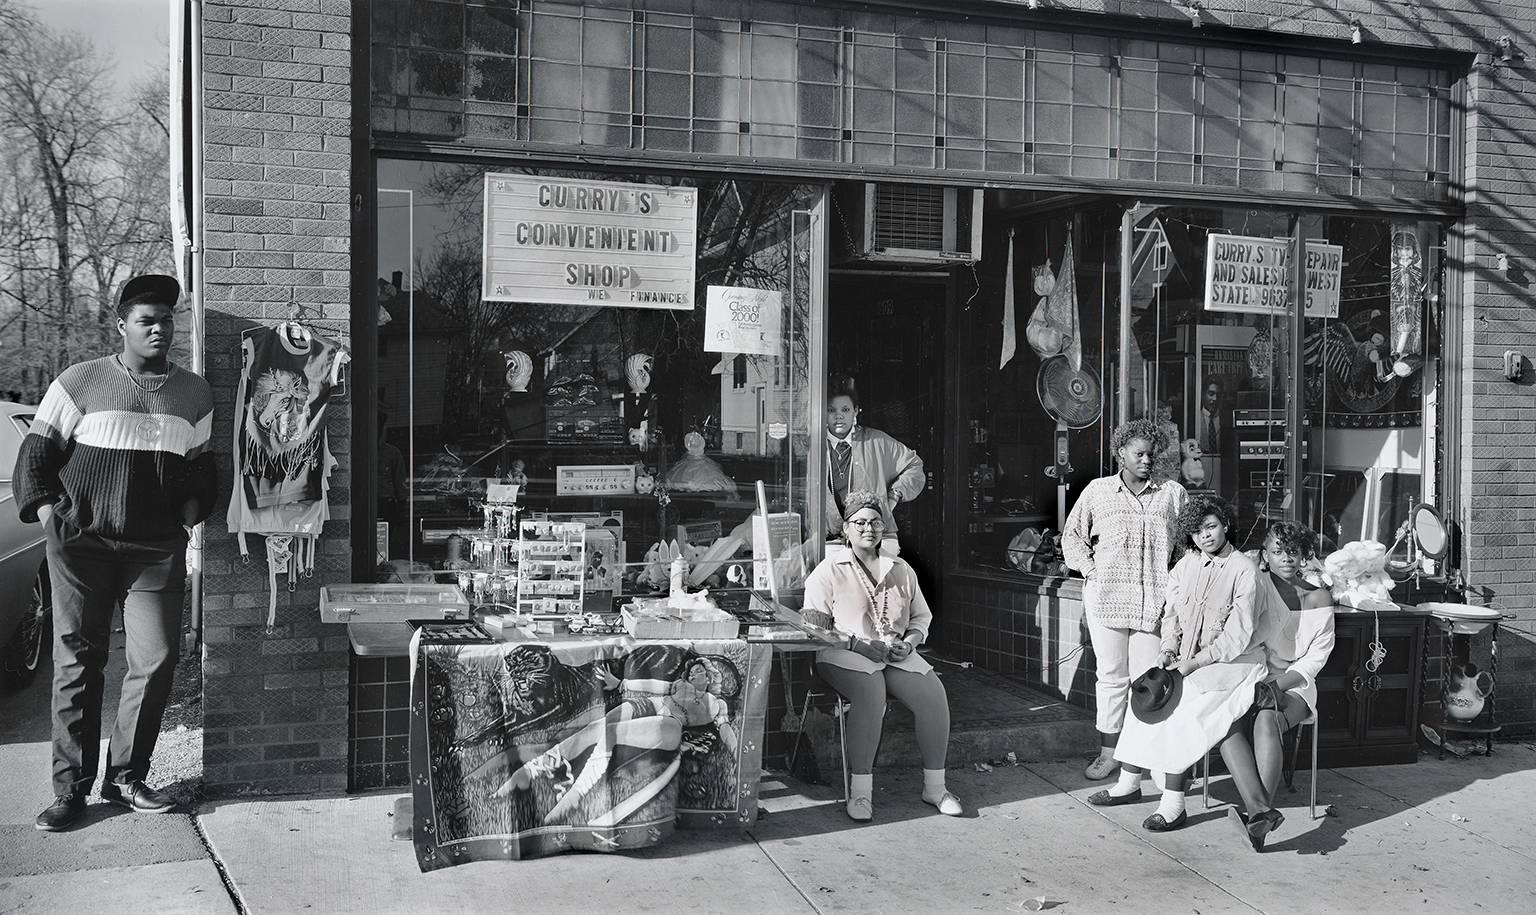 Douglas Busch Portrait Photograph - Curry's Convenience Store